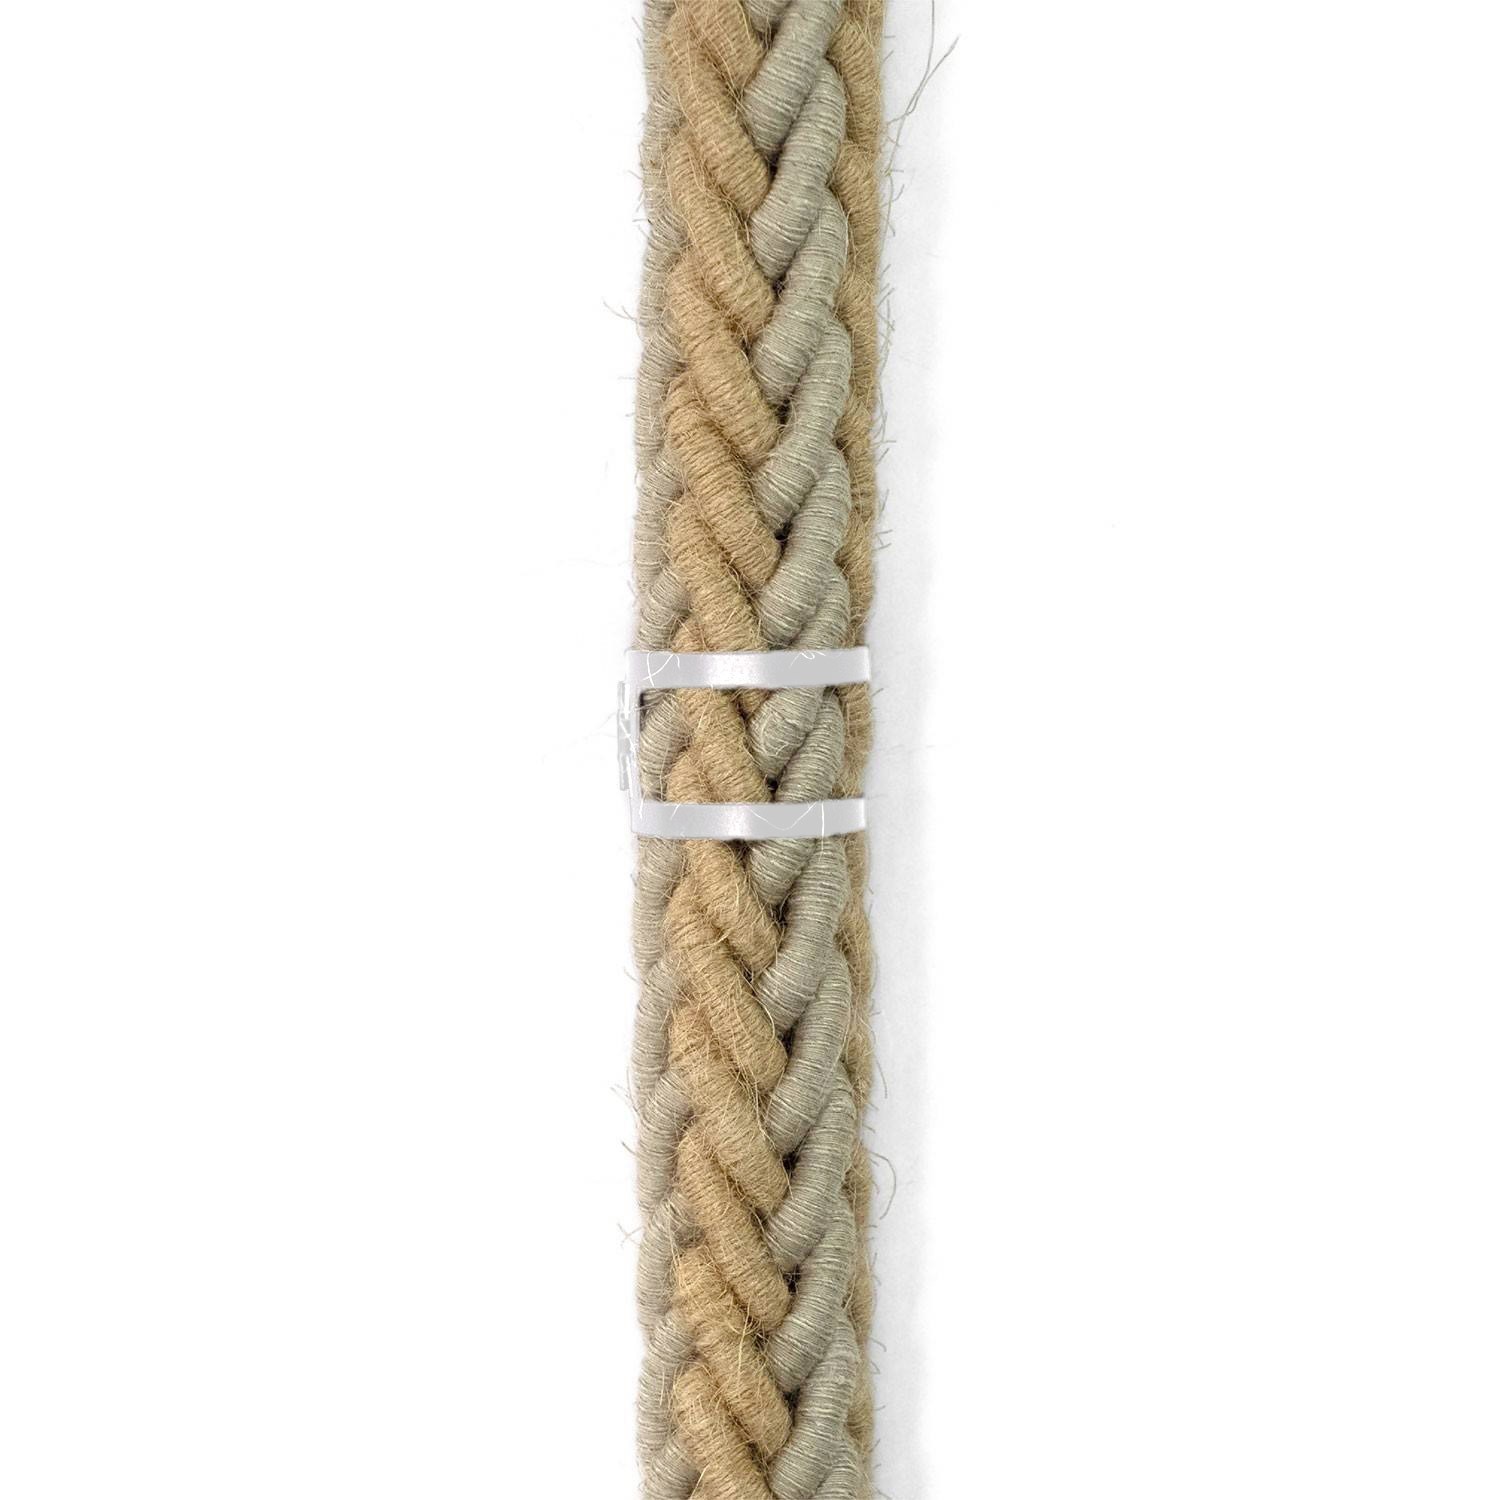 Metalen kabelbinderclip voor touwen met een diameter van 30 mm